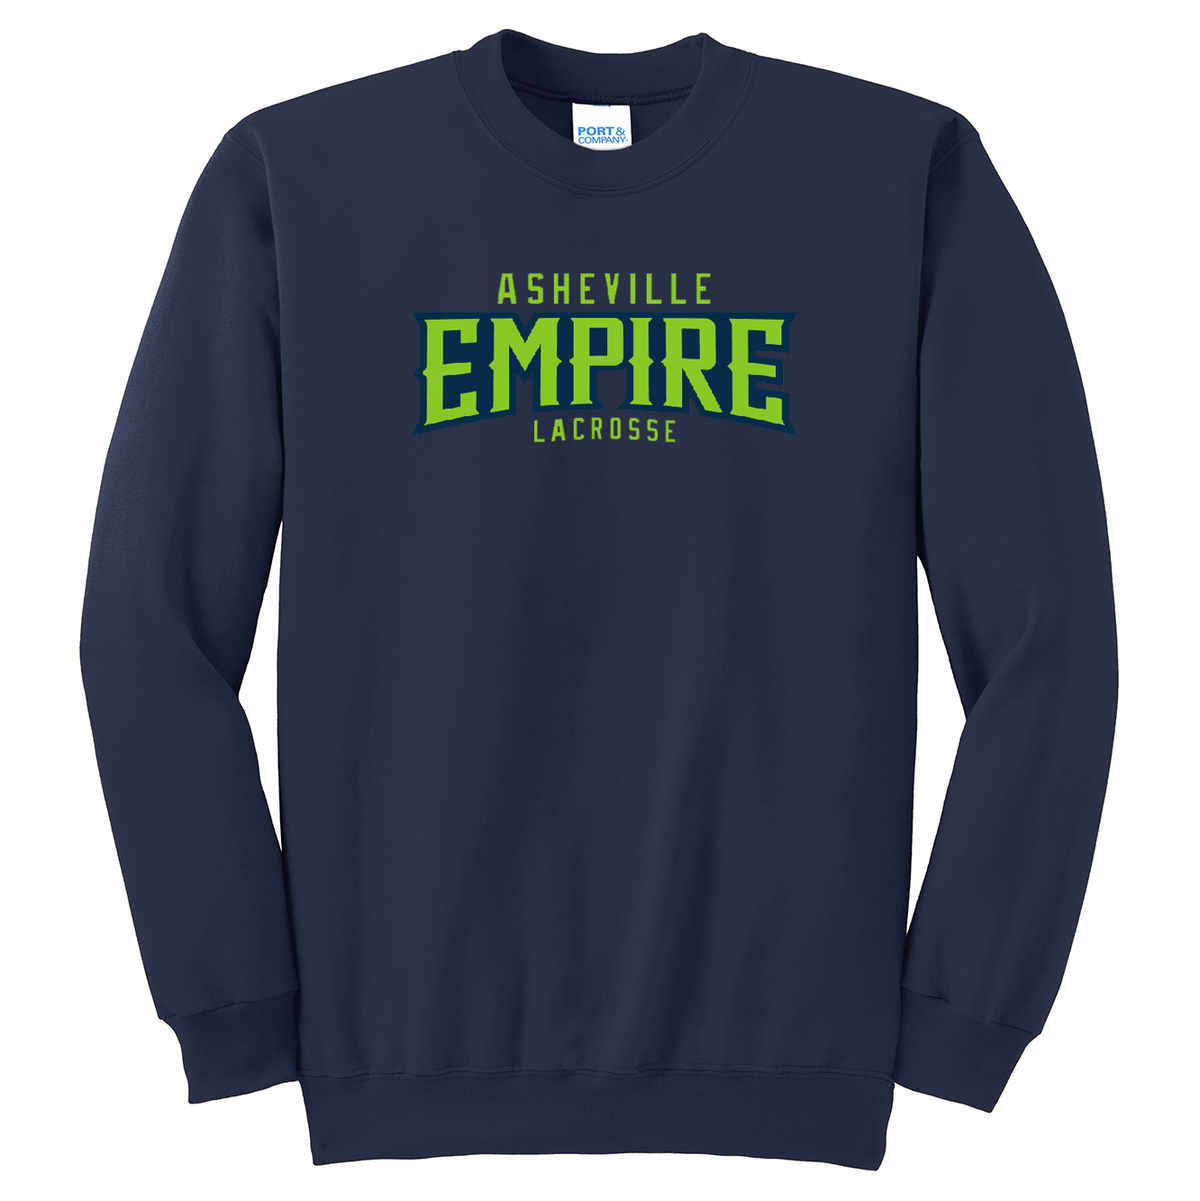 Asheville Empire Lacrosse Crew Neck Sweater